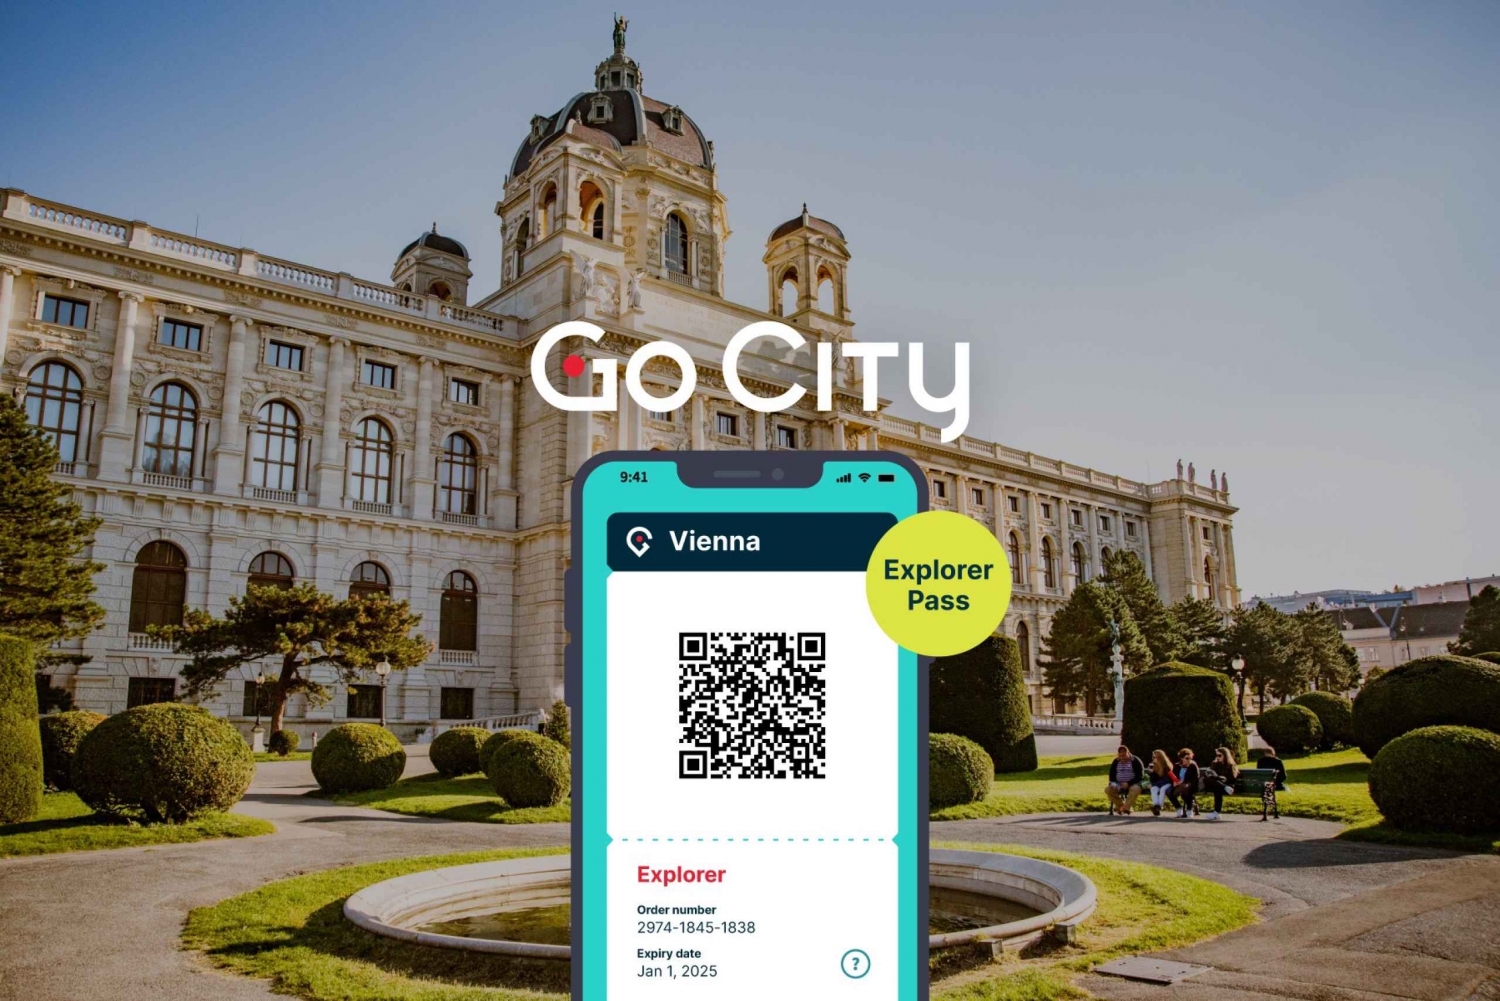 Vienne : Go City Explorer Pass pour un maximum de 7 attractions